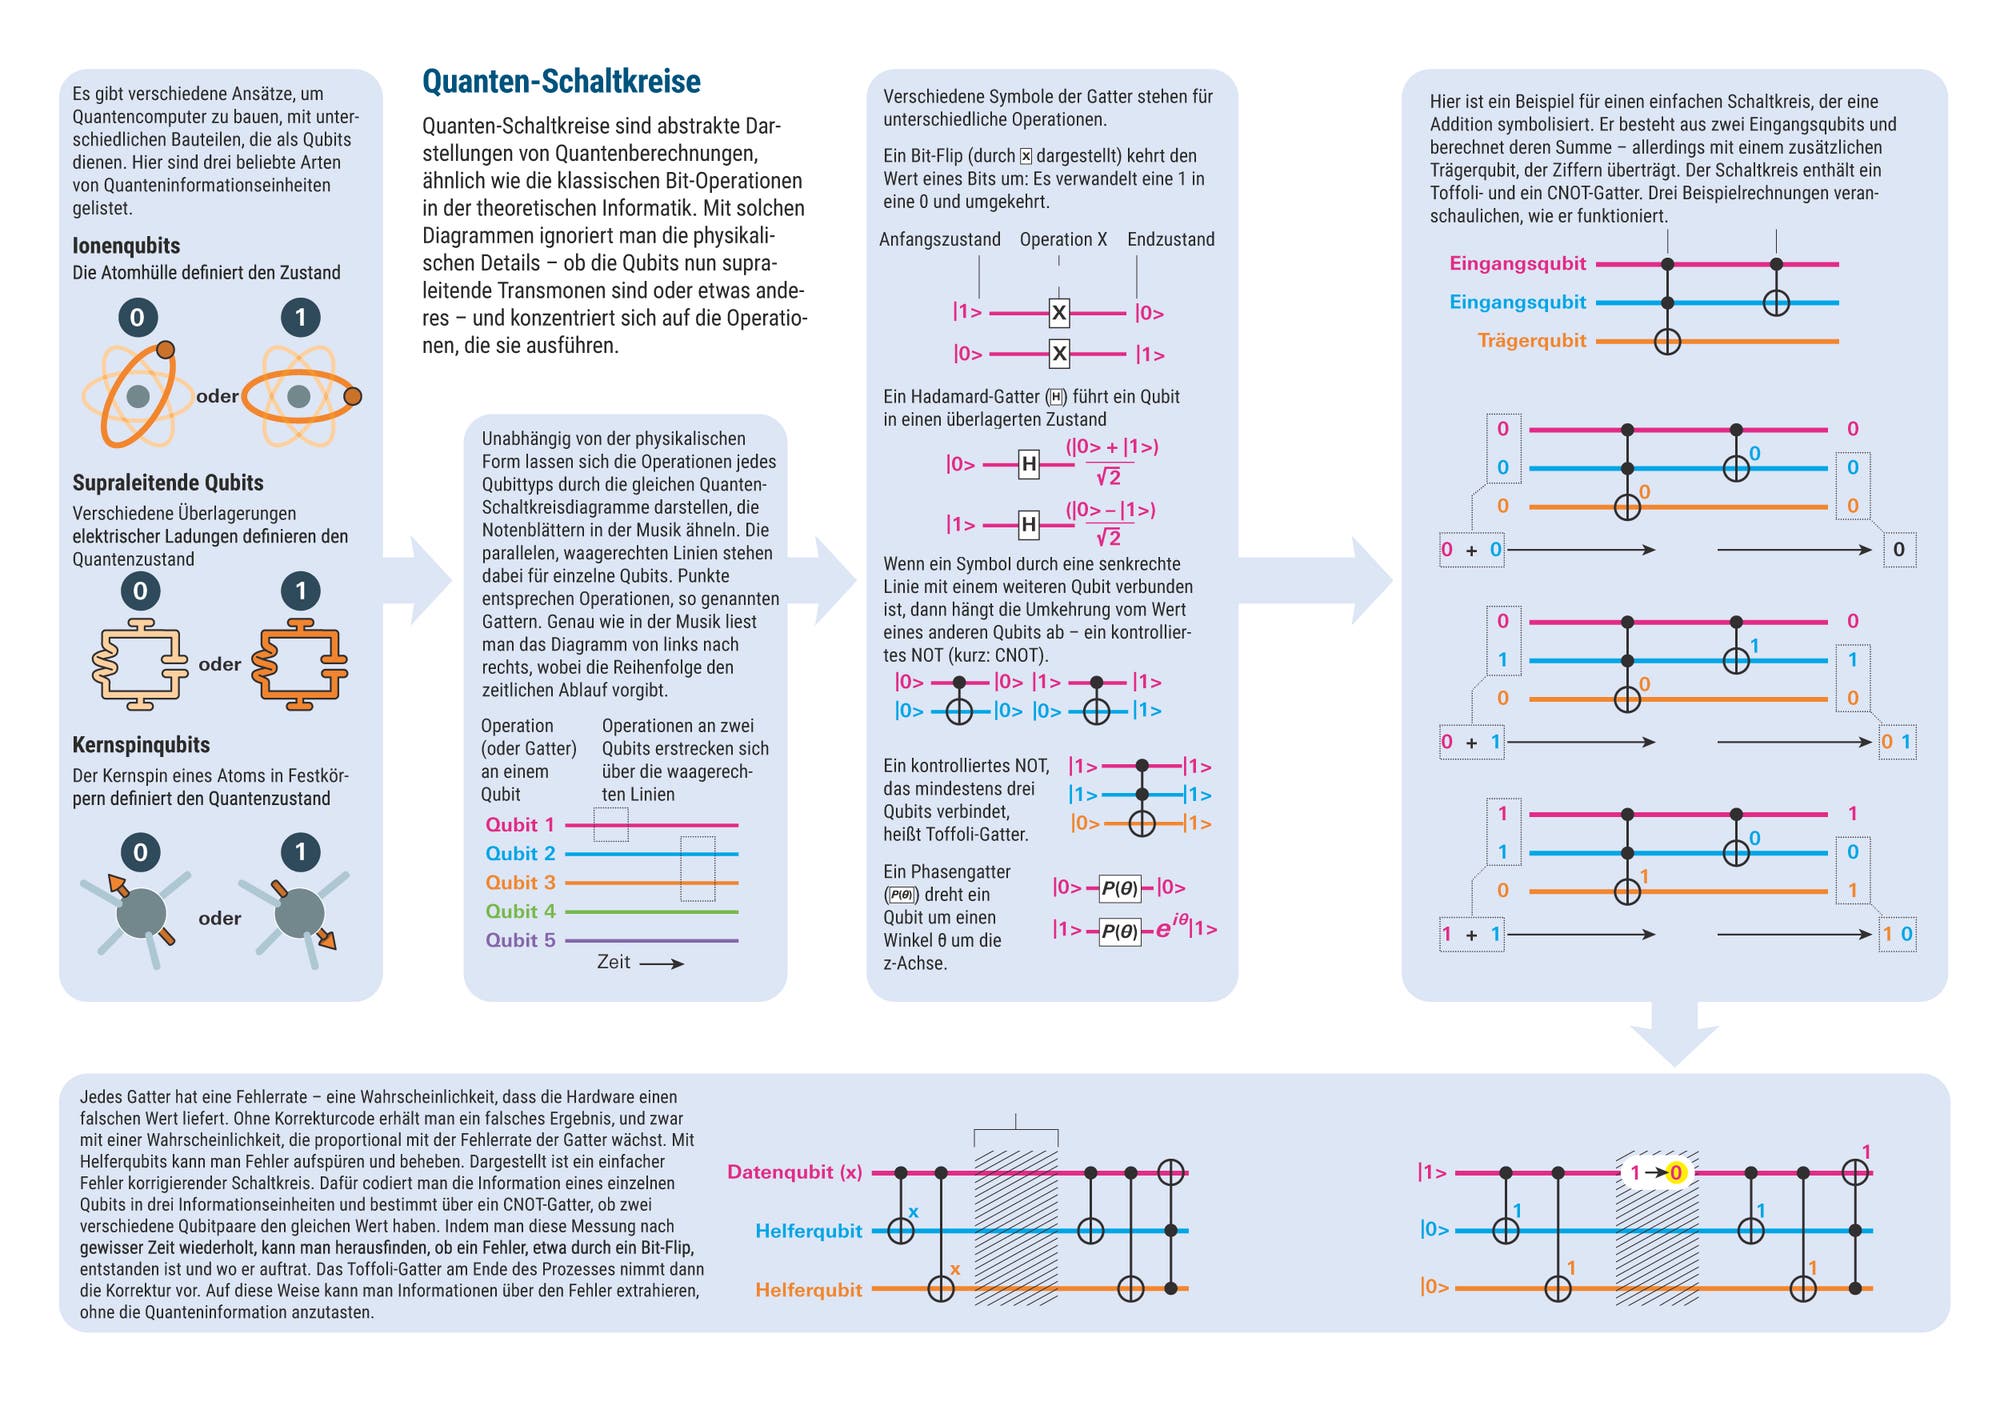 Infografik zu Quanten-Schaltkreisen